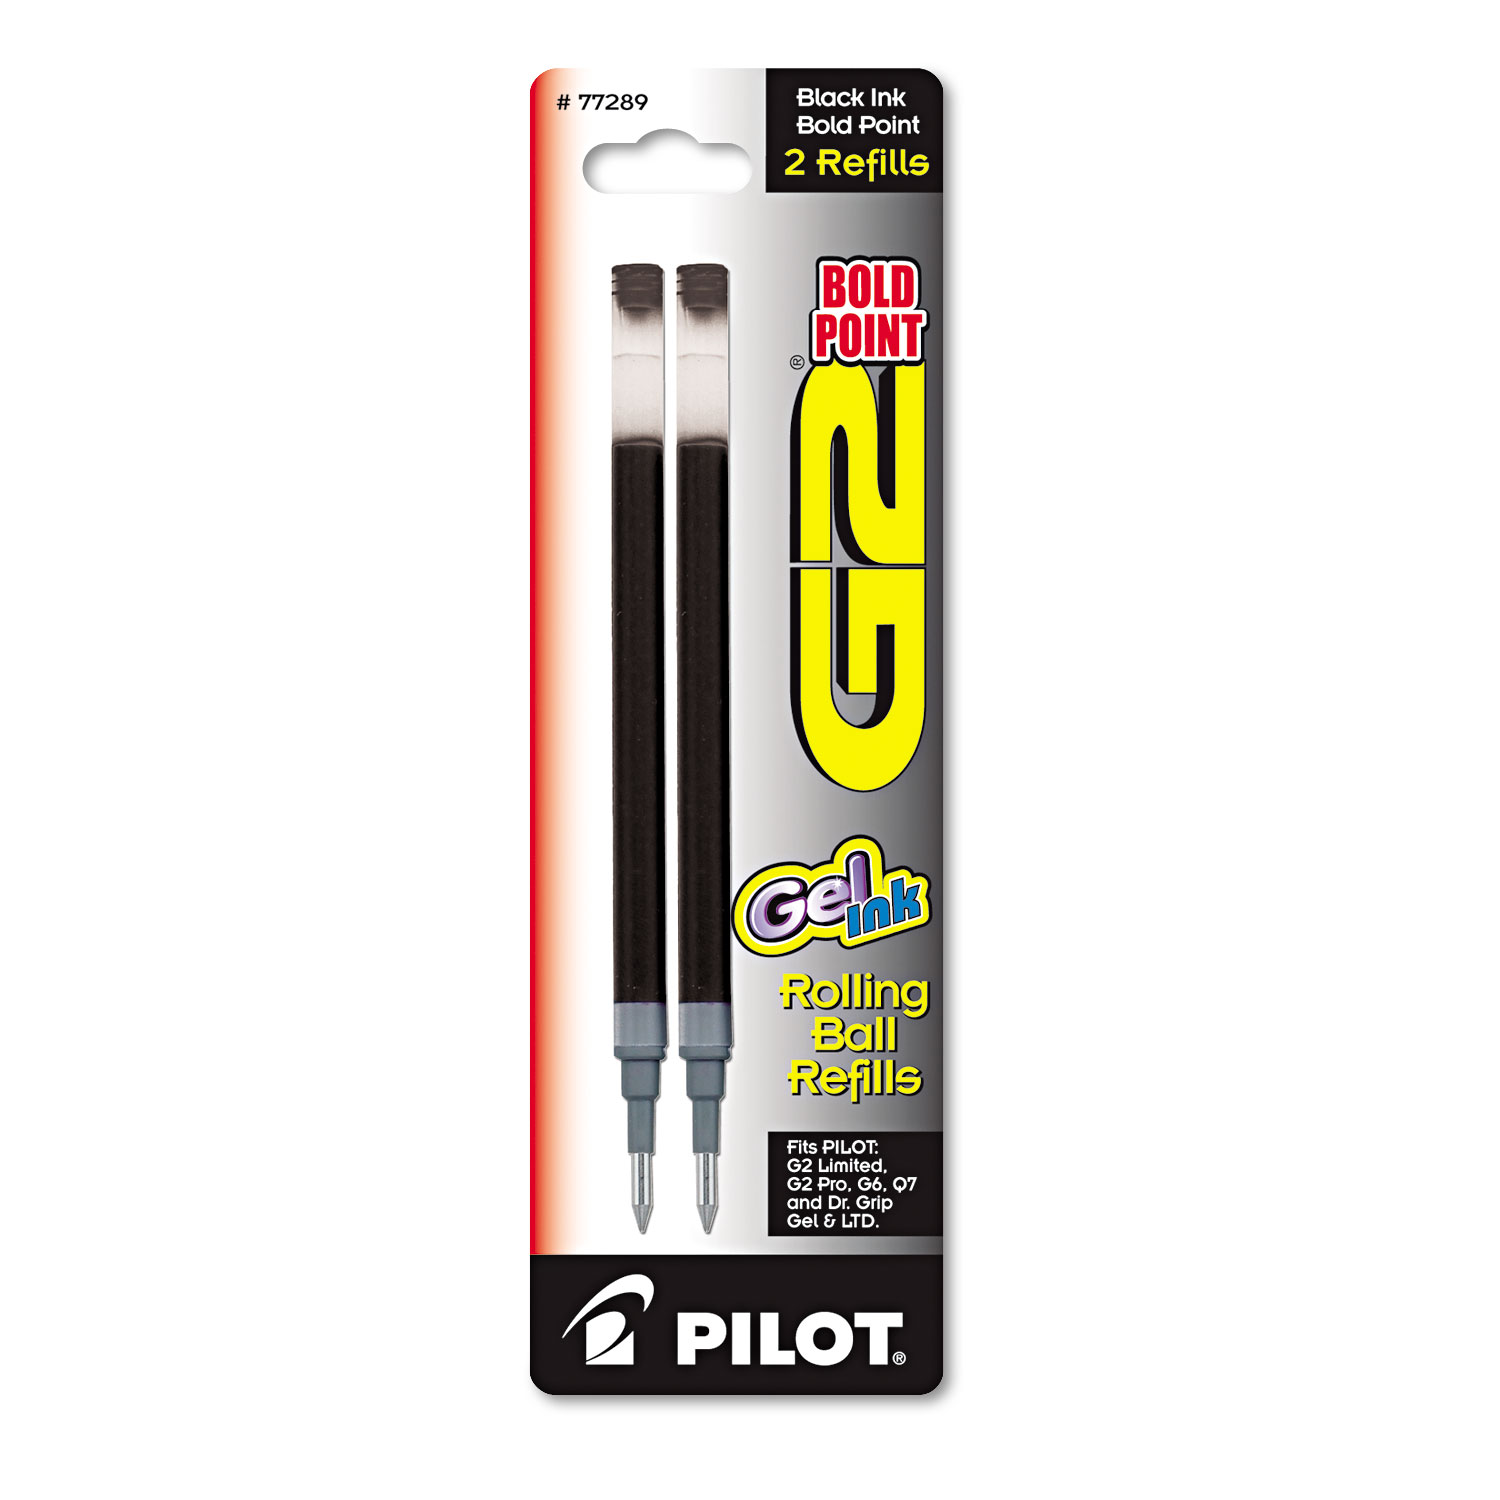  Pilot PIL77289 Refill for Pilot G2 Gel Ink Pens, Bold Point, Black Ink, 2/Pack (PIL77289) 